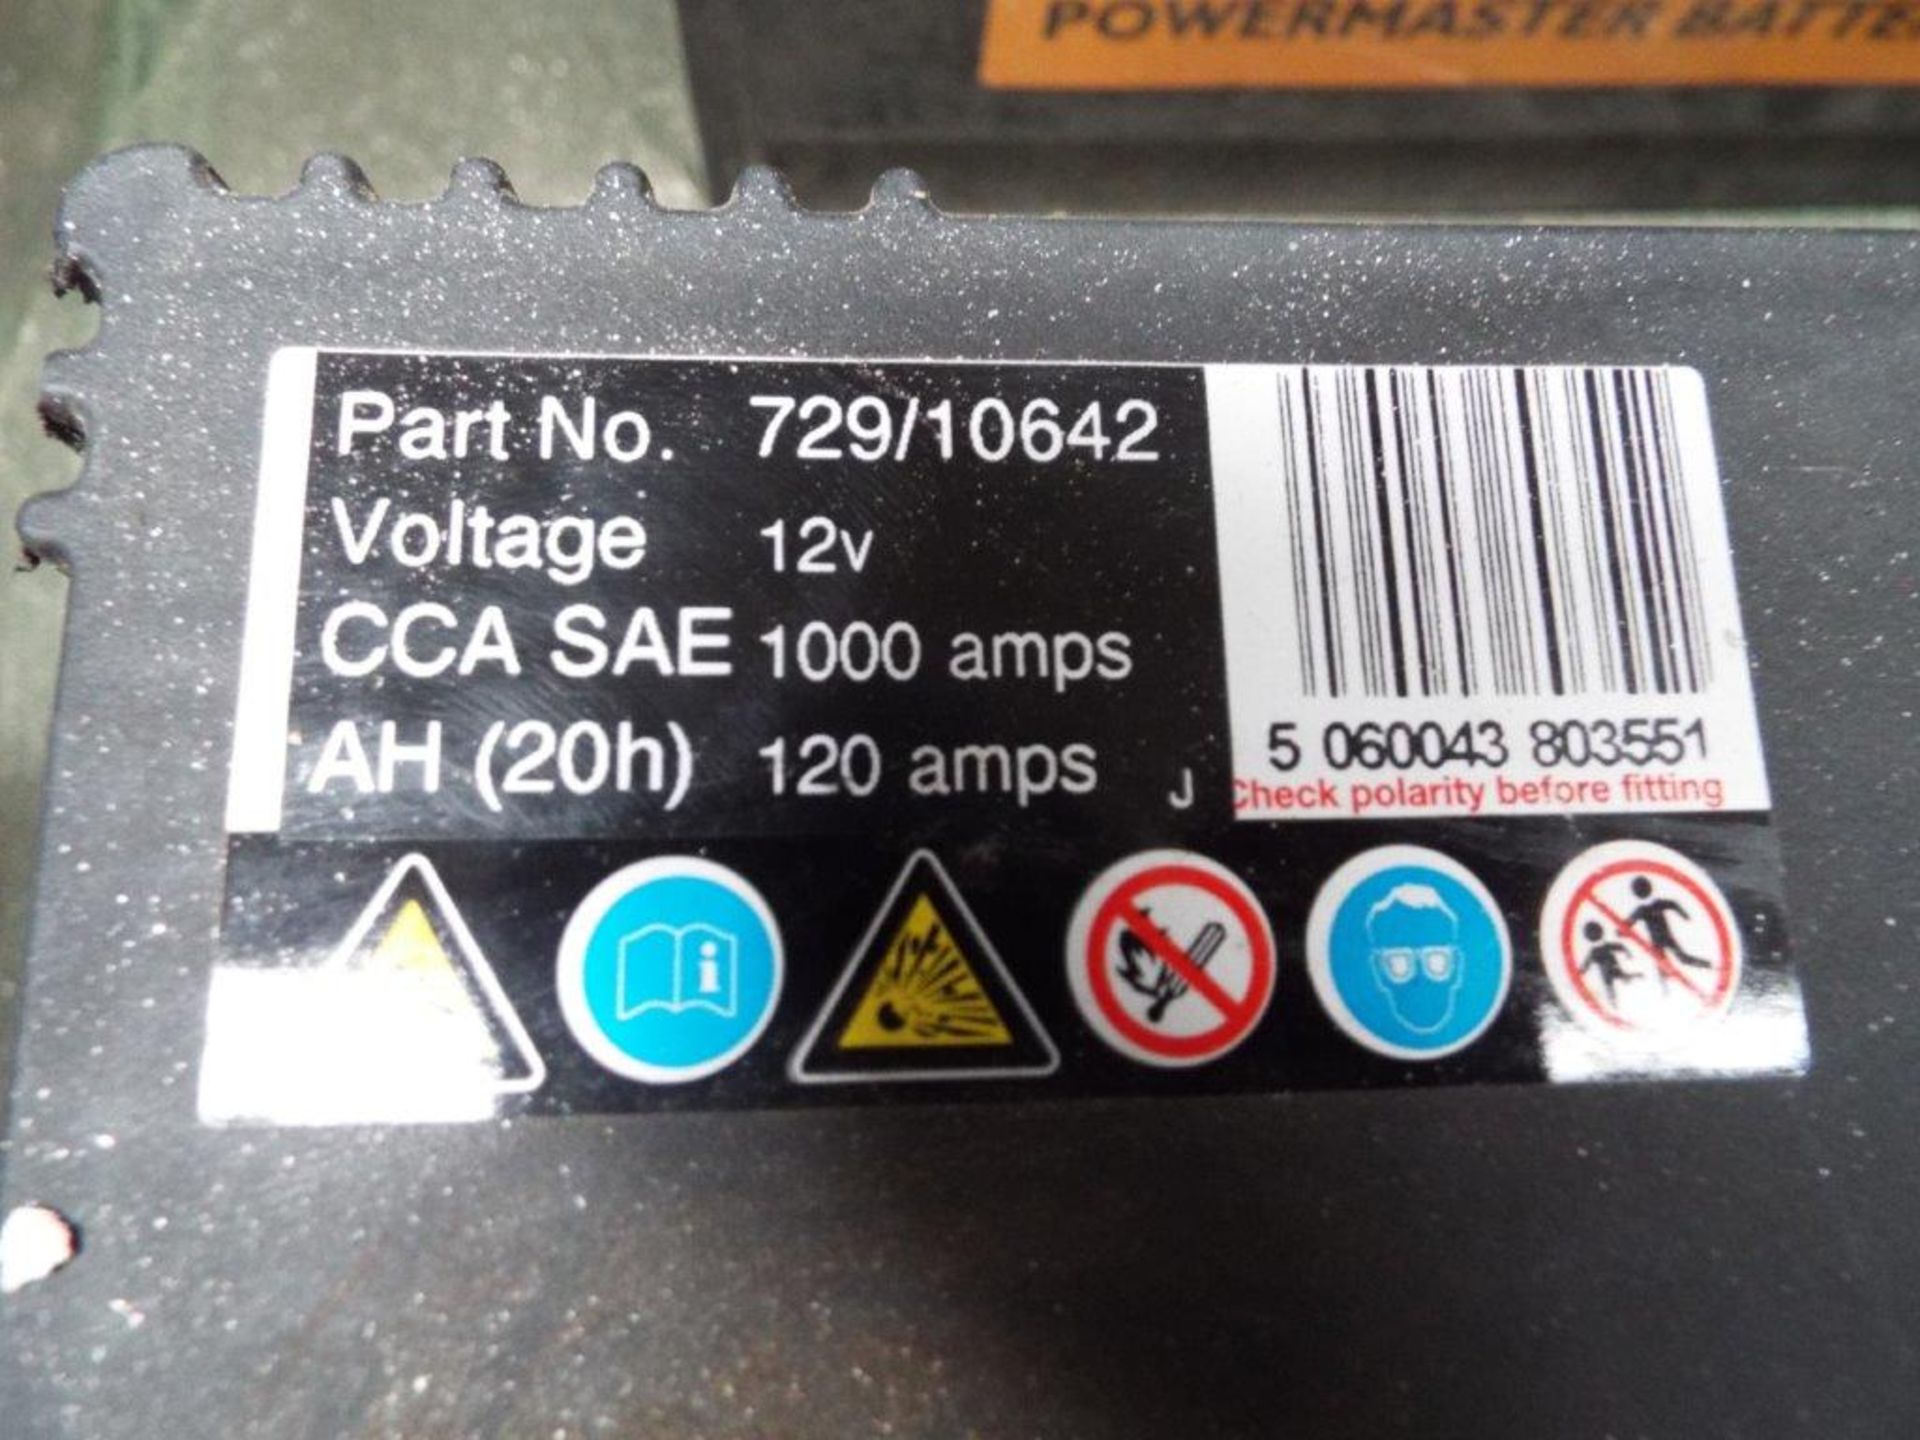 4 x Unissued JCB Powermaster 729/10642 12v Batteries - Image 3 of 6